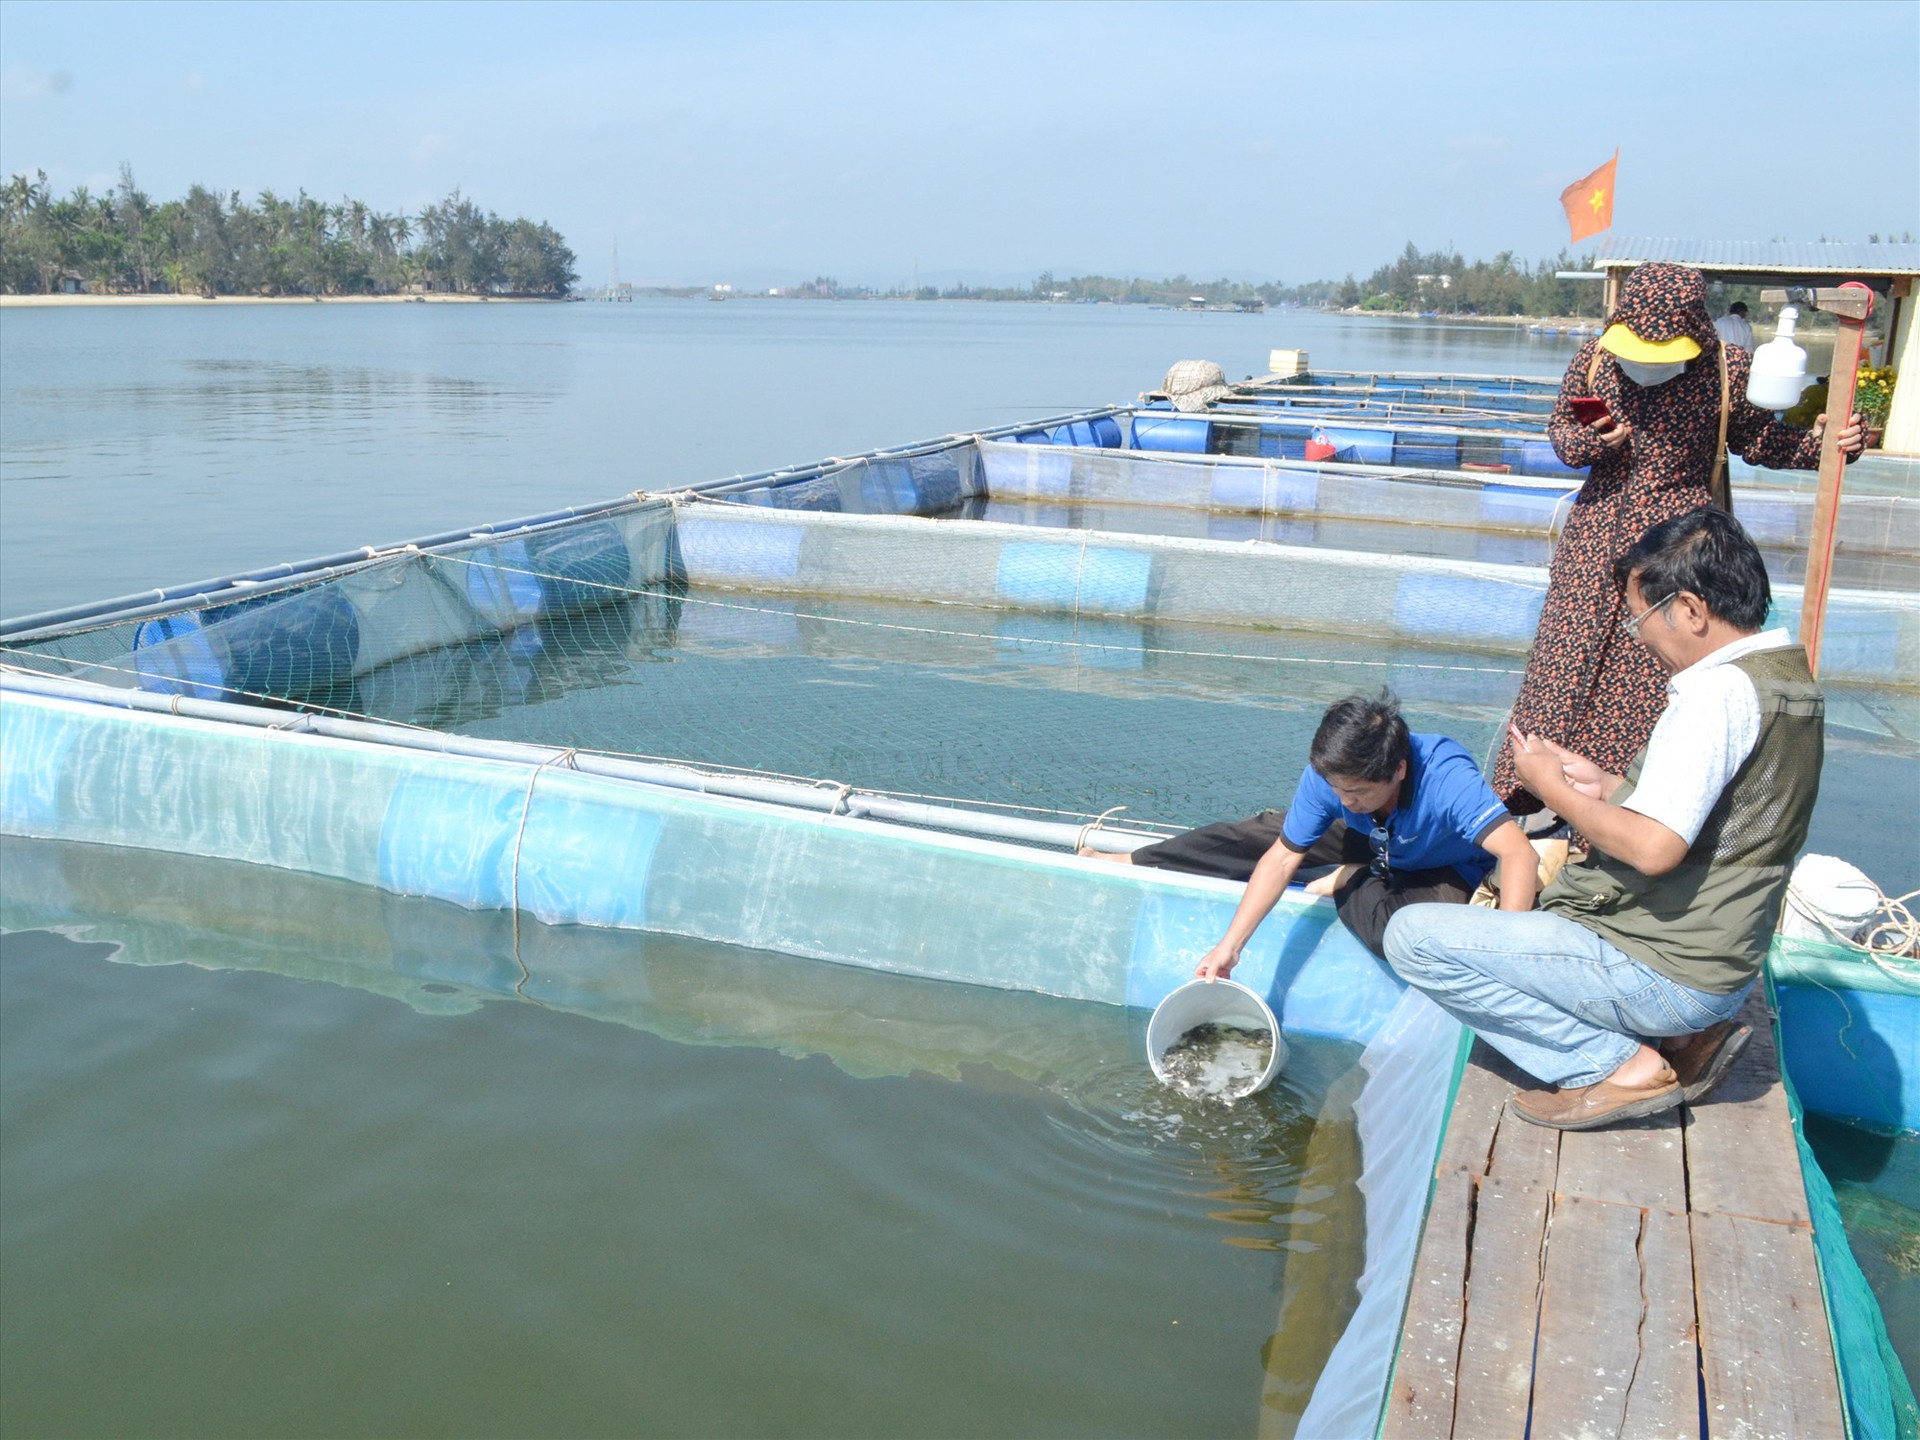 Trung tâm Khuyến nông tỉnh hỗ trợ giống cá chim vây vàng giúp hộ ông Trần Văn Đức nuôi cá ở ven biển An Hòa. Ảnh: VIỆT NGUYỄN